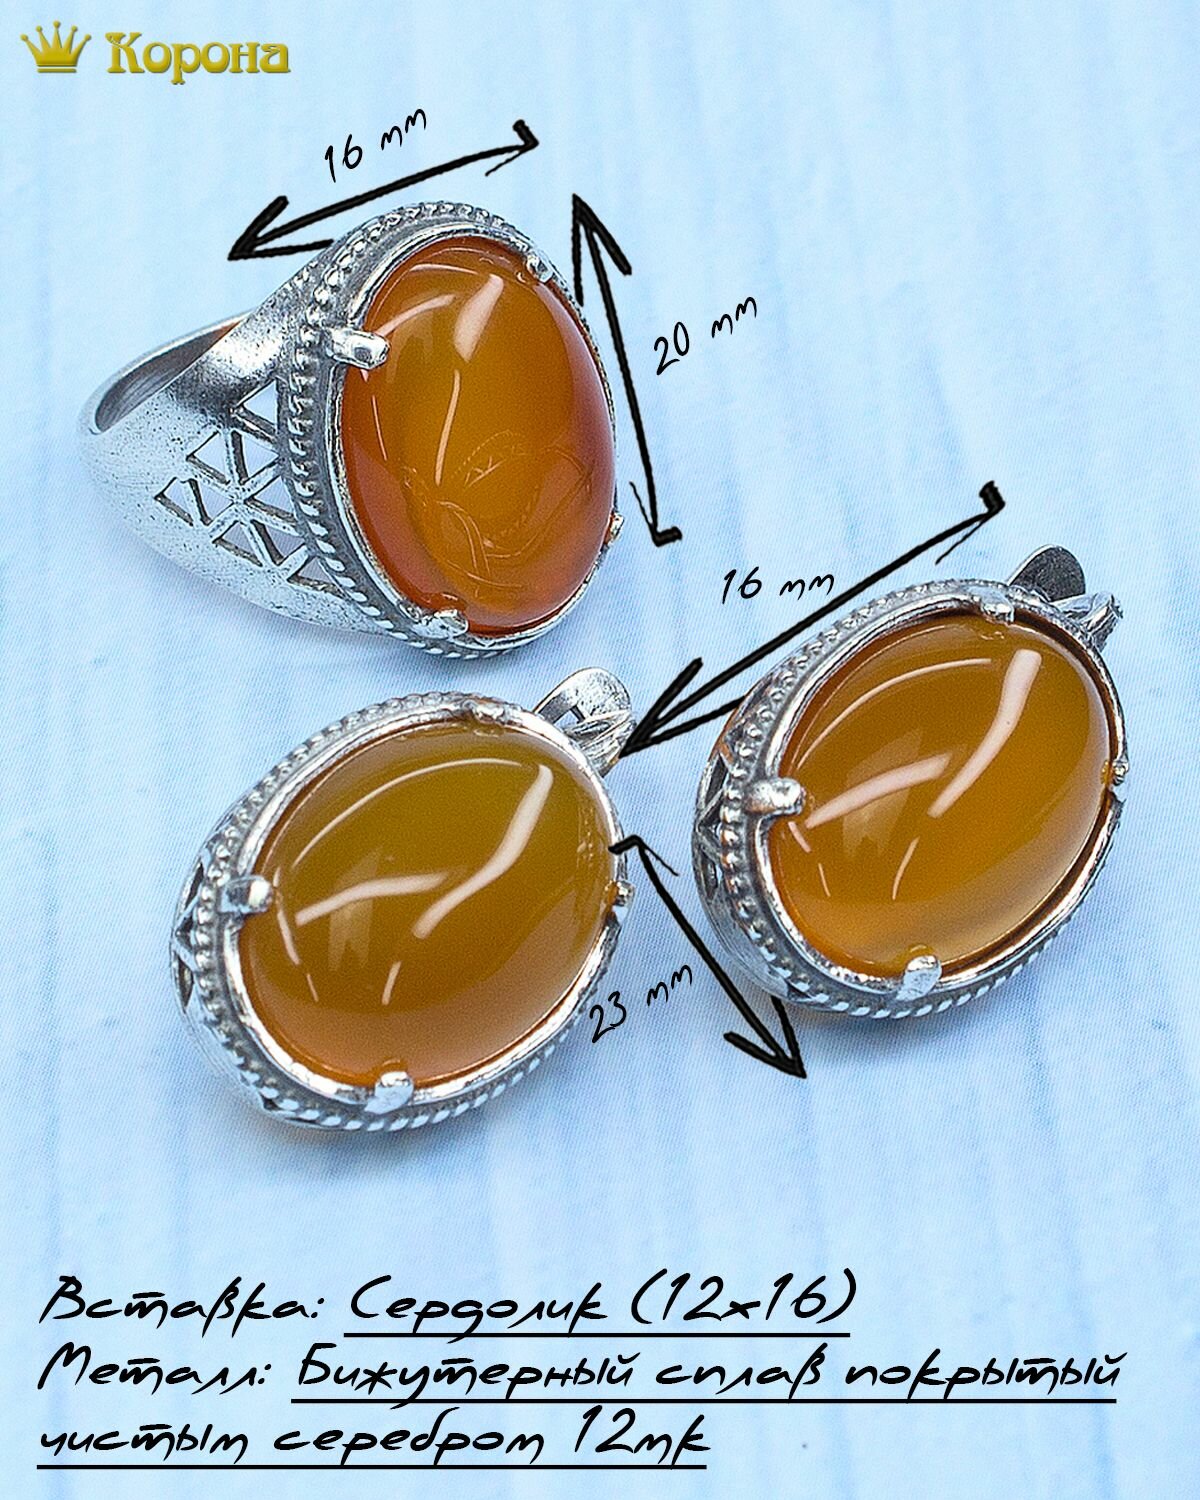 Комплект бижутерии Комплект посеребренных украшений (серьги + кольцо) с натуральным сердоликом: серьги, кольцо, сердолик